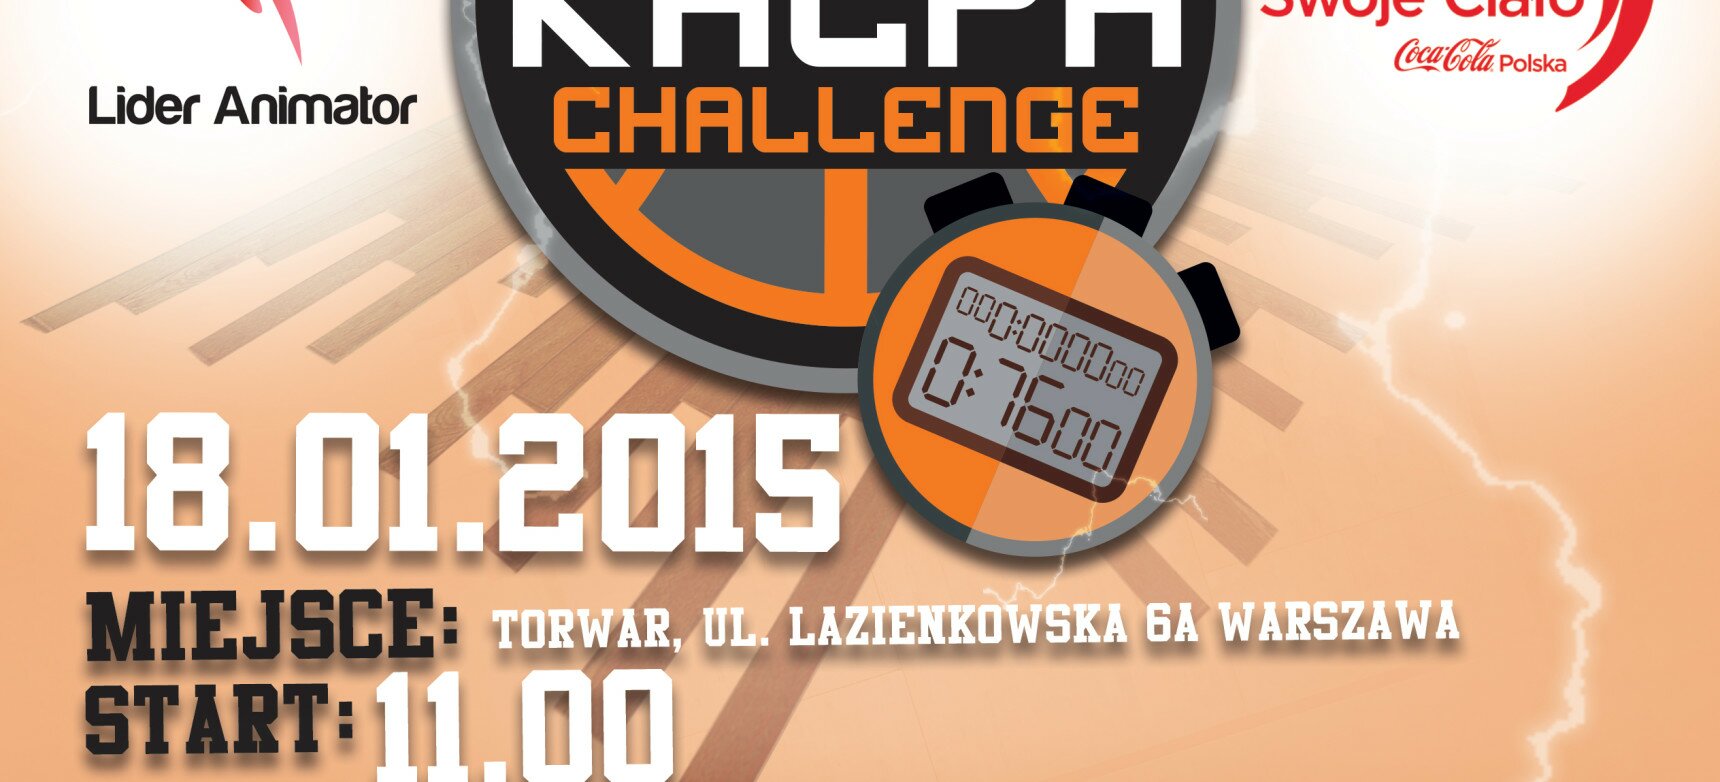 KACPA CHALLENGE 18.01.2015 r. TORWAR